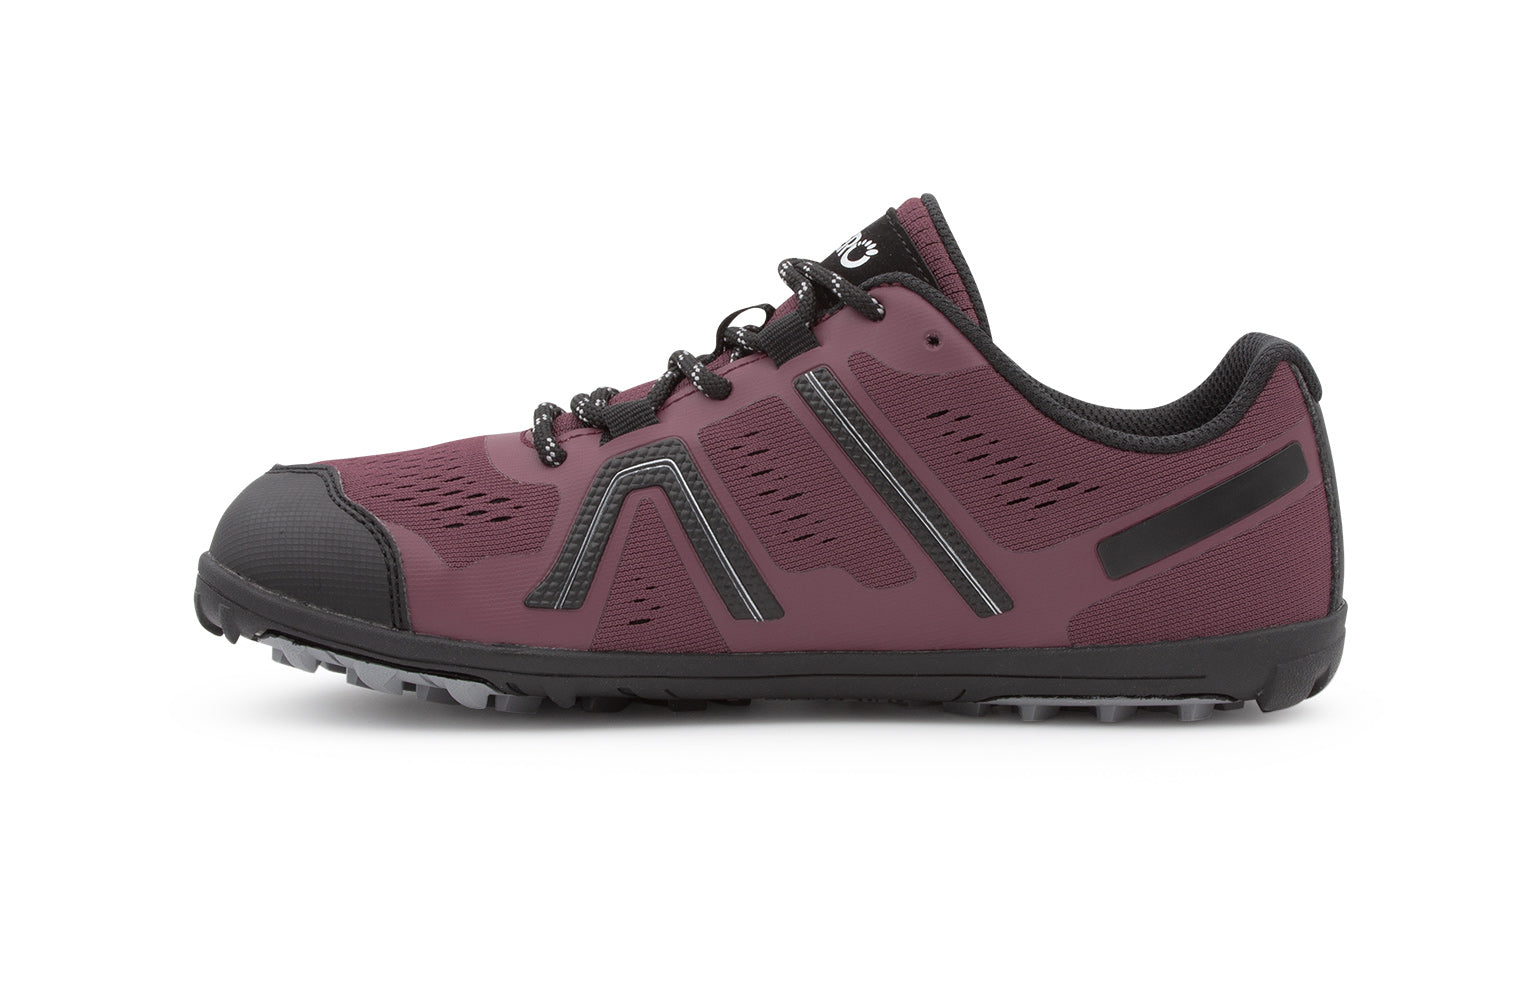 Xero Shoes Mesa Trail barfods trailsko til kvinder i farven muddy rose, inderside